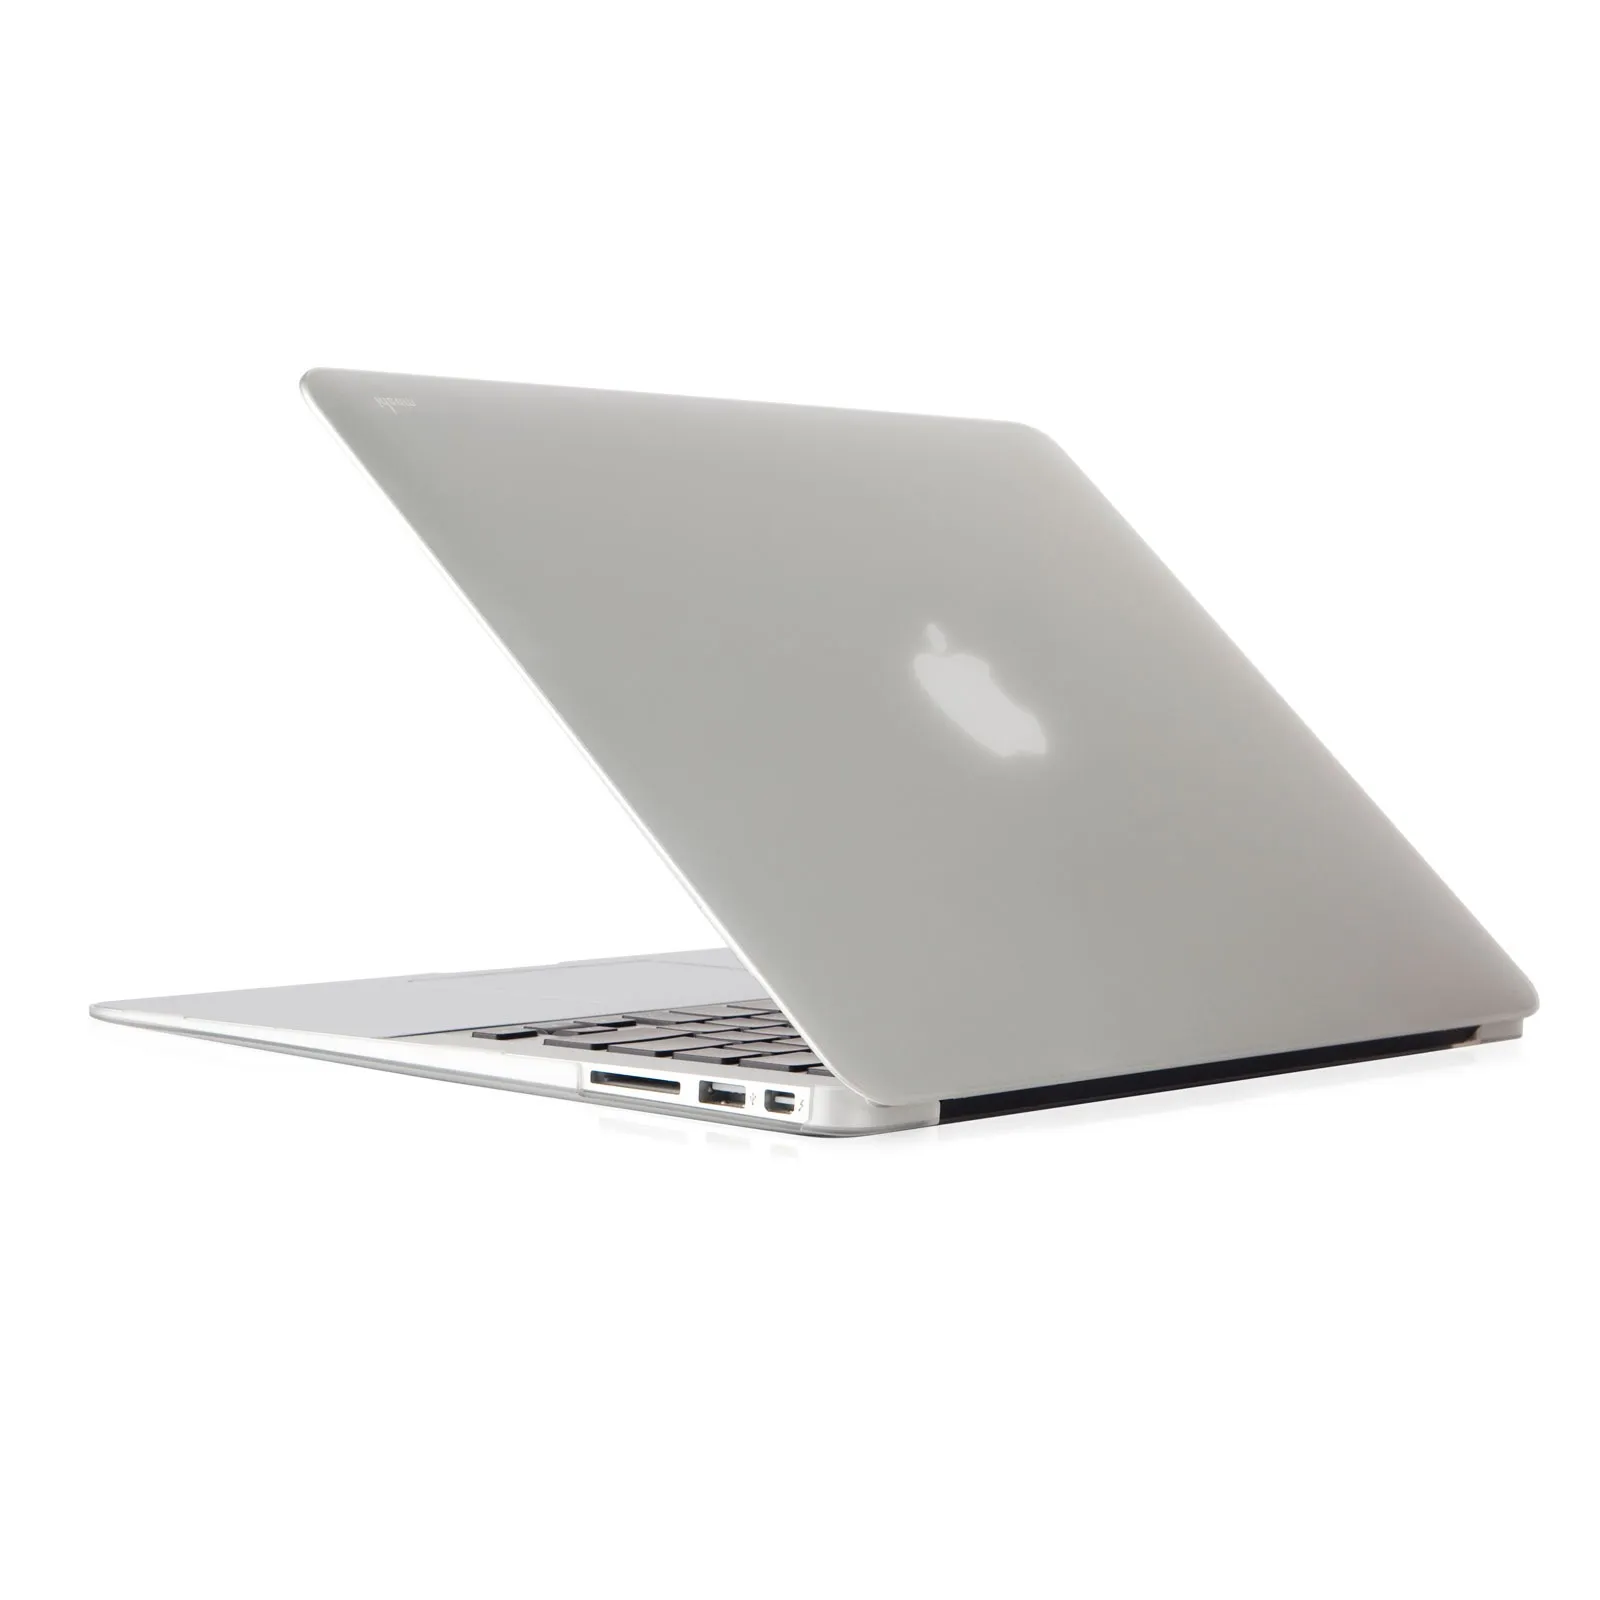 Macbook Air 2015 core i5